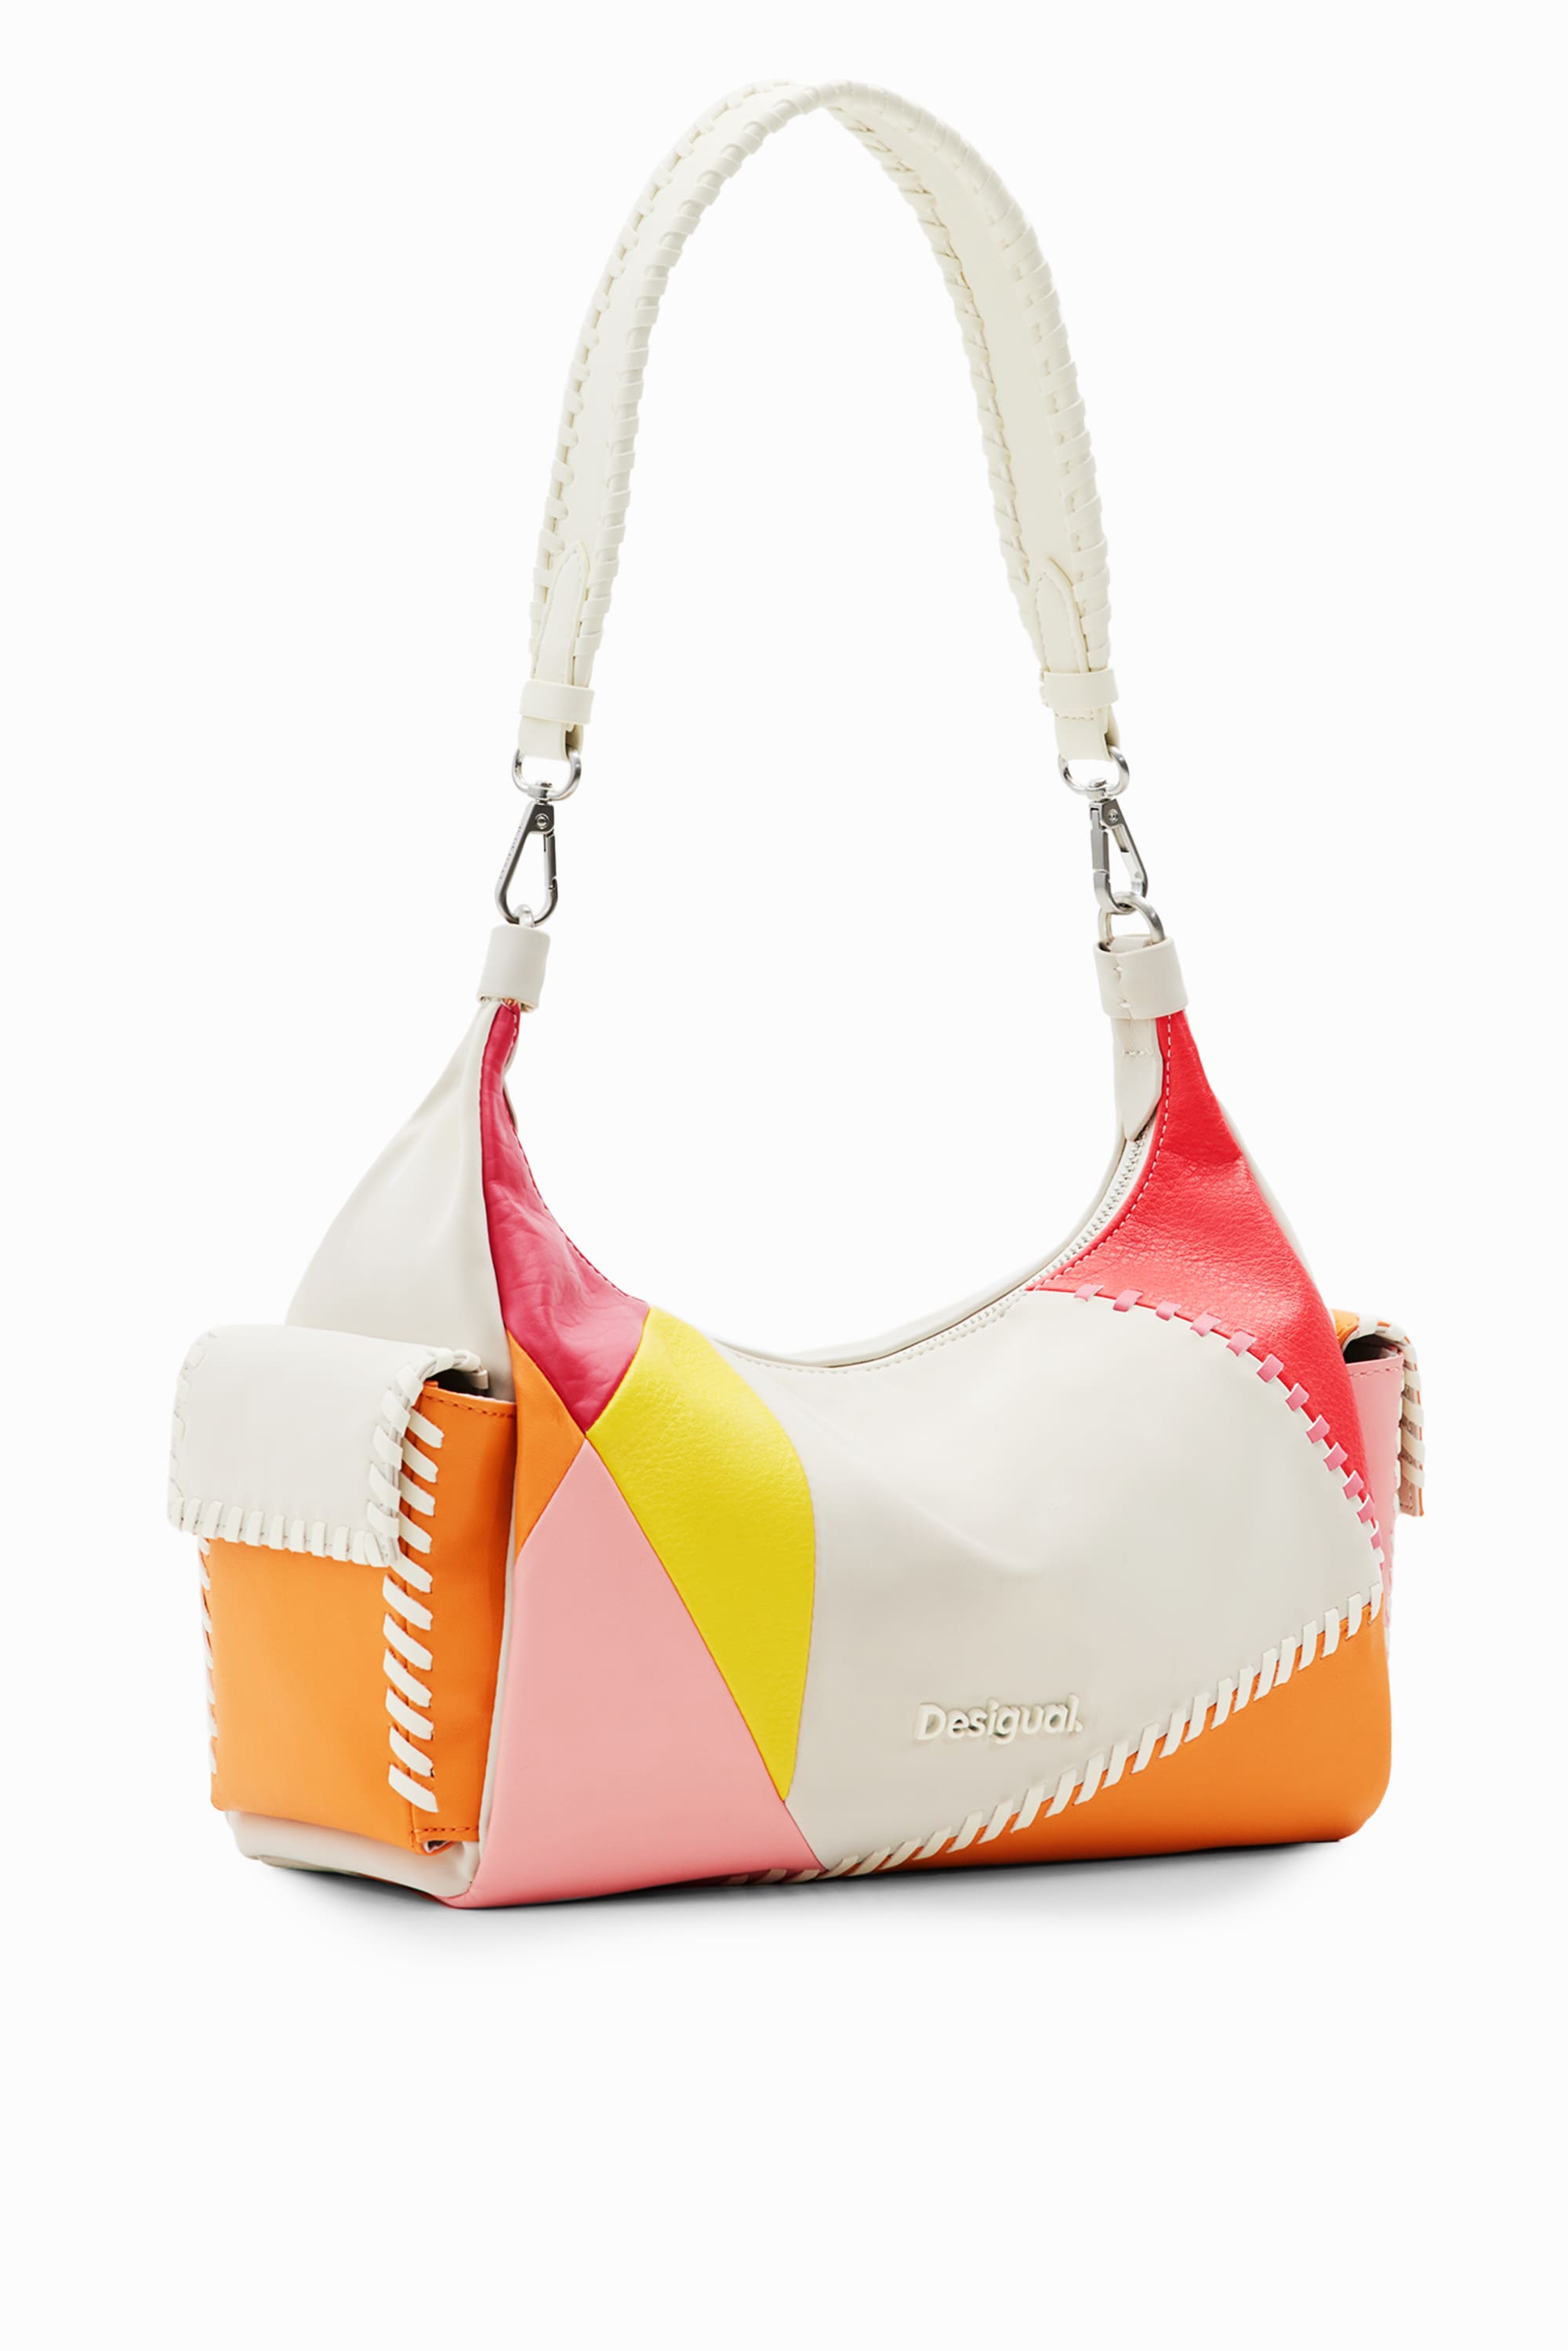 DESIGUAL 58Y53H5 en Multicolor Raso | purse Desigual Bags originales